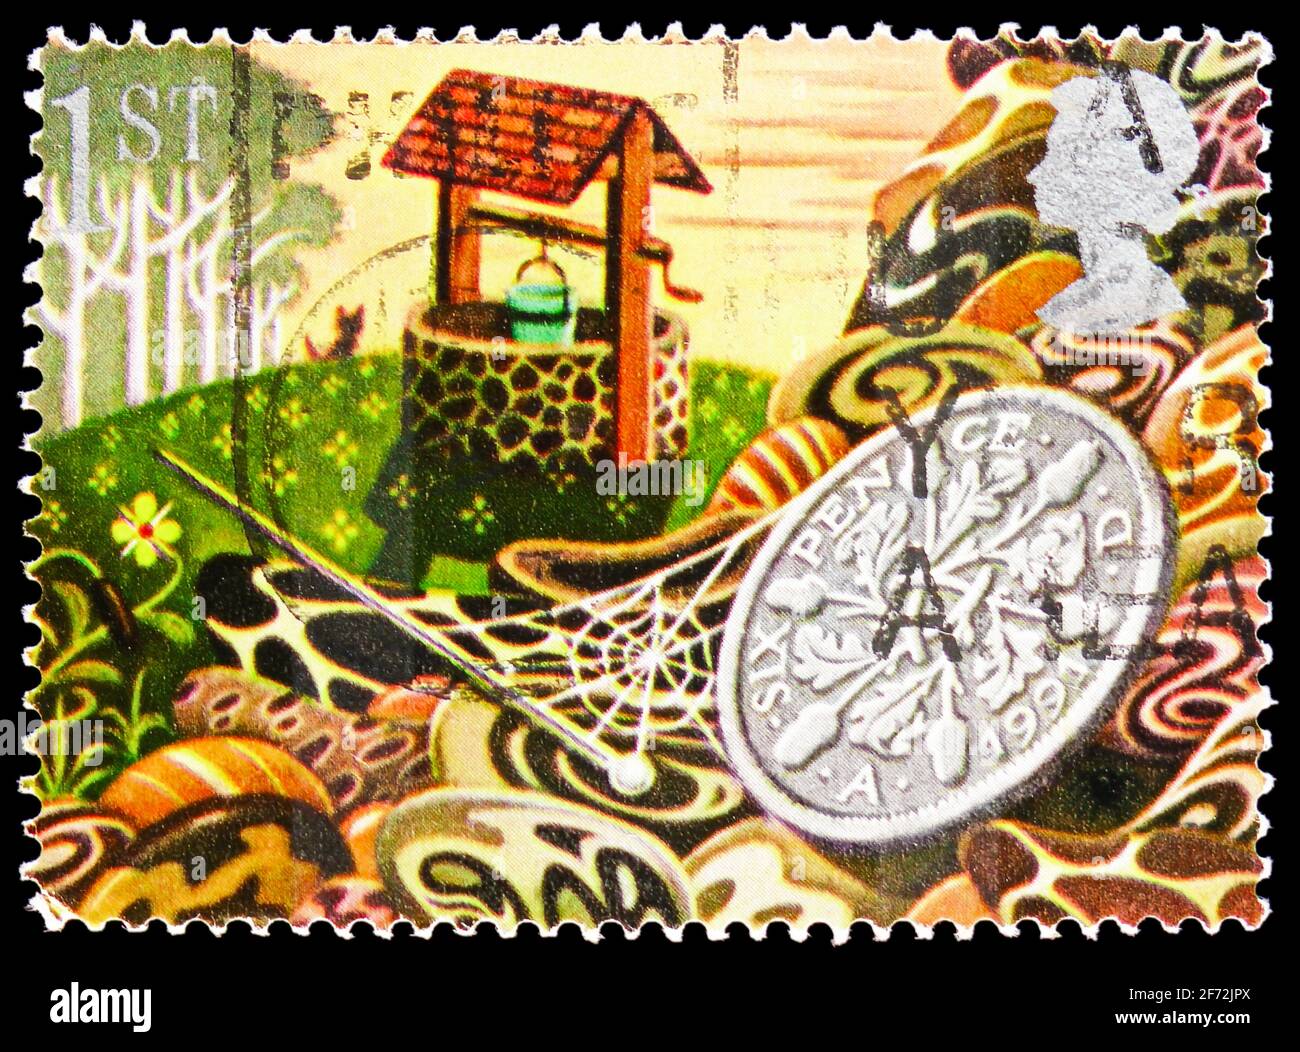 MOSCOU, RUSSIE - 22 DÉCEMBRE 2020: Timbre-poste imprimé au Royaume-Uni spectacles souhaitant bien et Sixpence, timbres de voeux 1991 - symboles de chance s. Banque D'Images